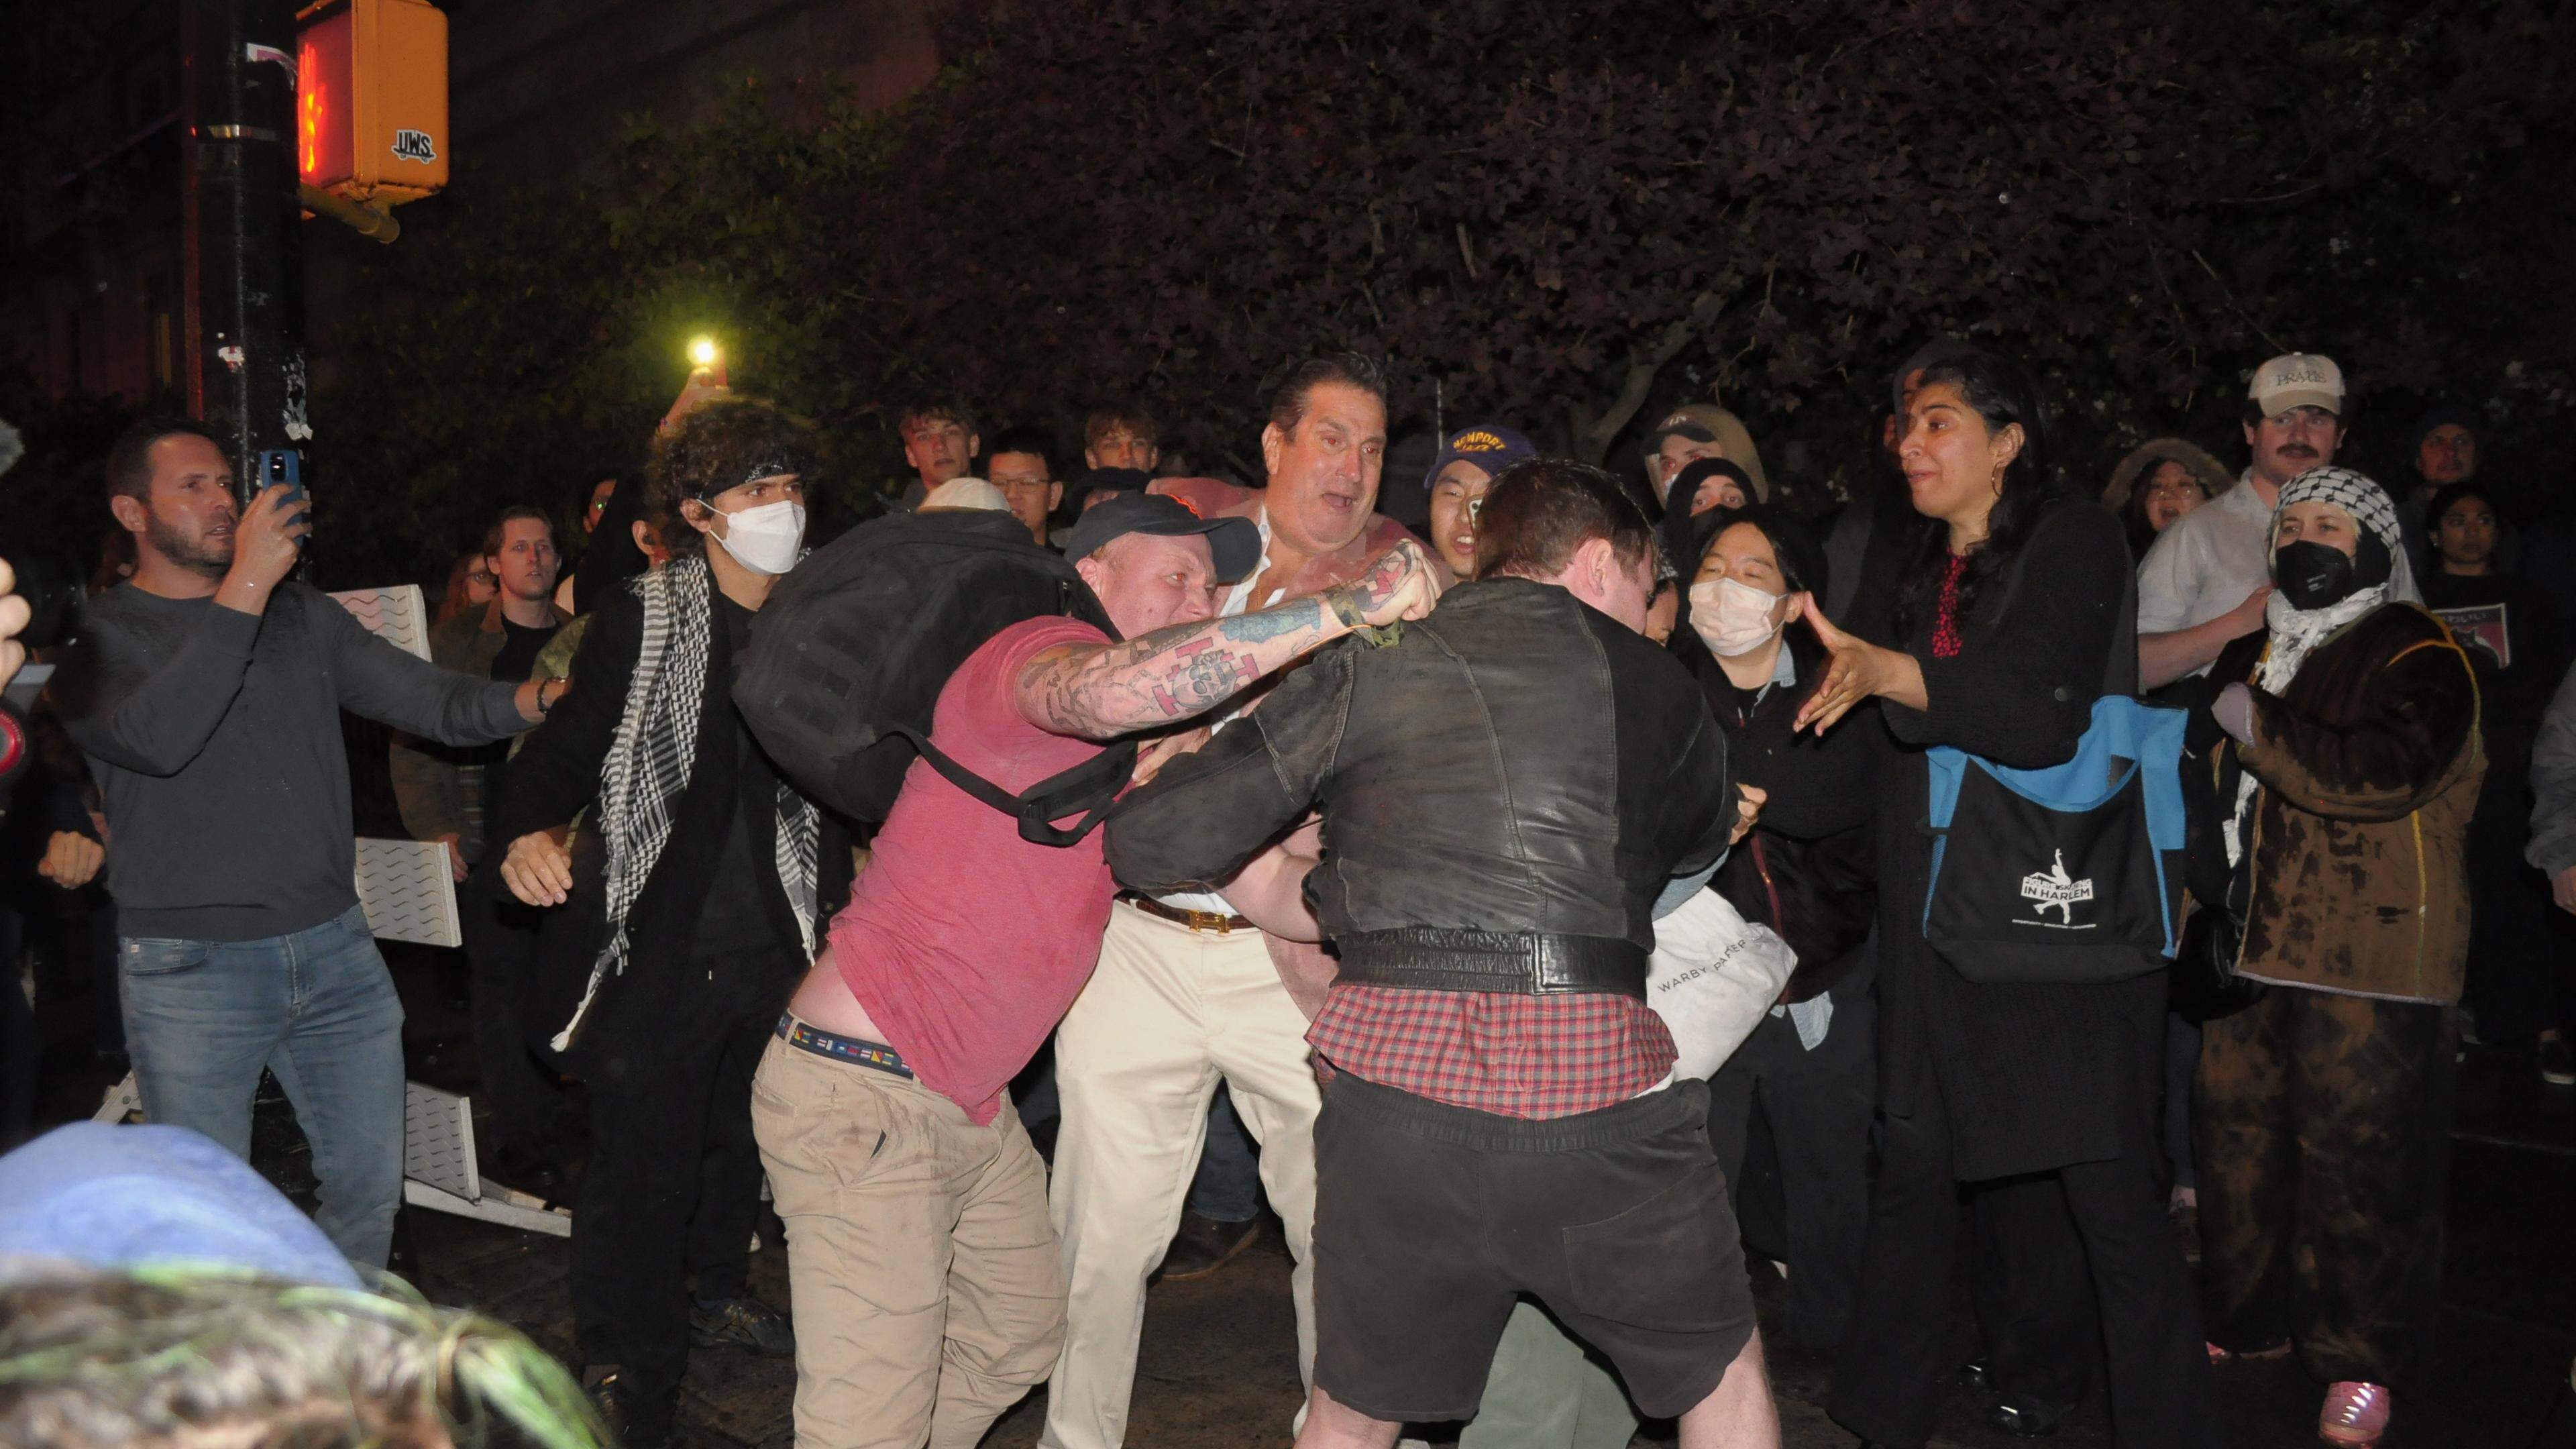 Ein proisraelischer Demonstrant, stößt mit einem propalästinensischen Demonstranten, in der Nähe der Columbia University zusammen.